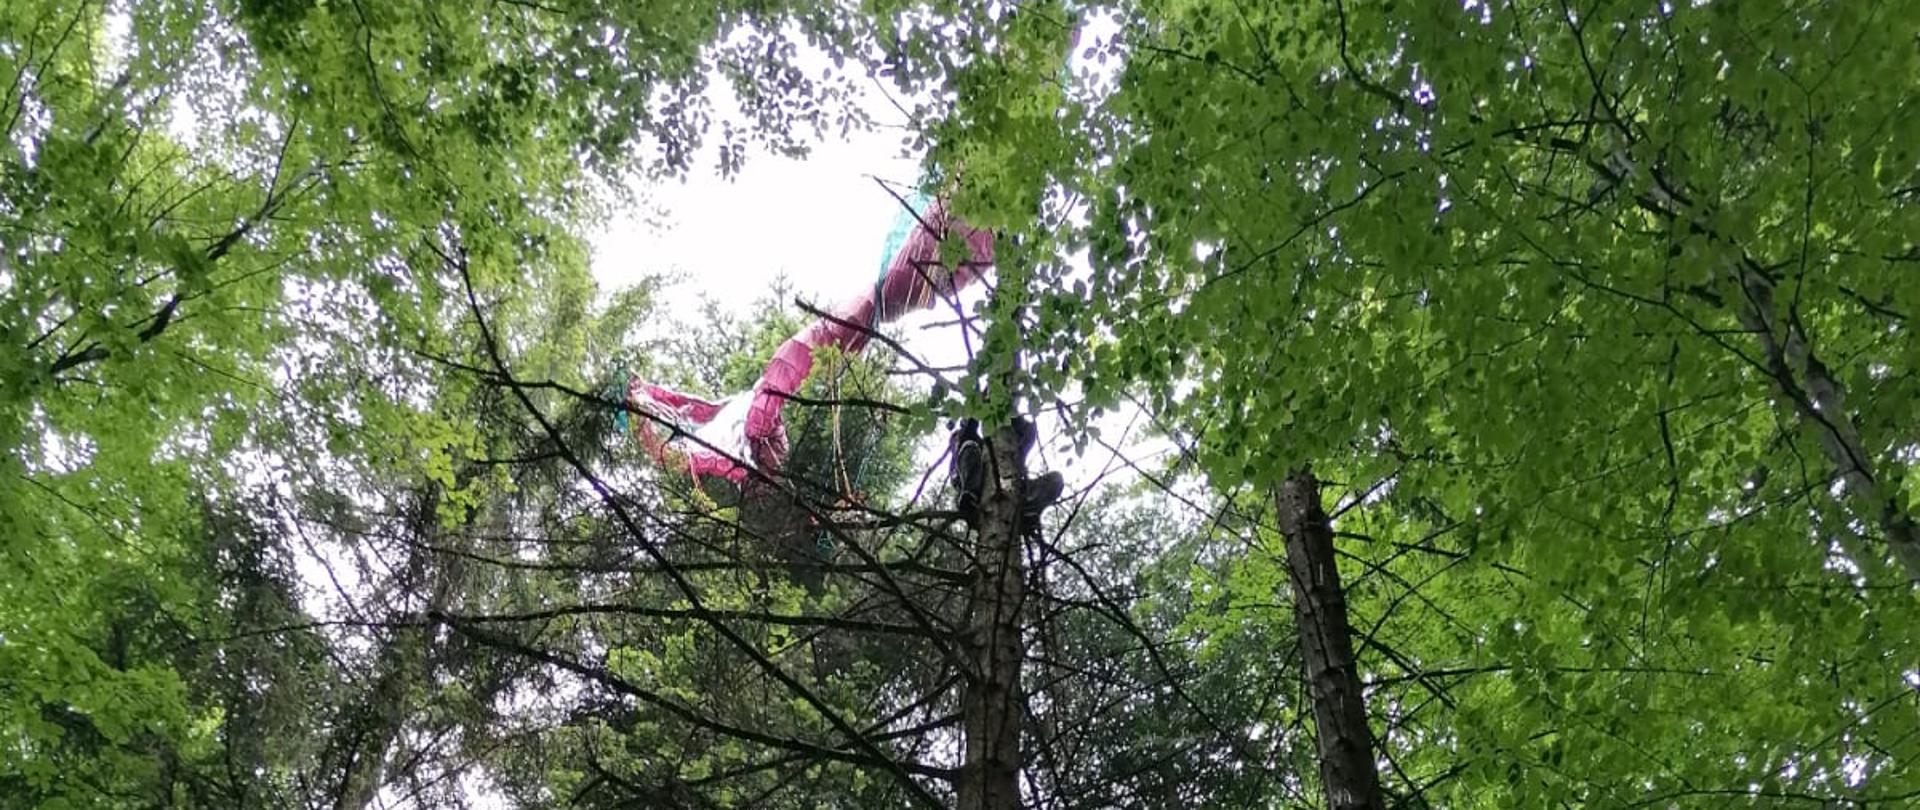 Paralotniarz zawieszony w konarach drzew